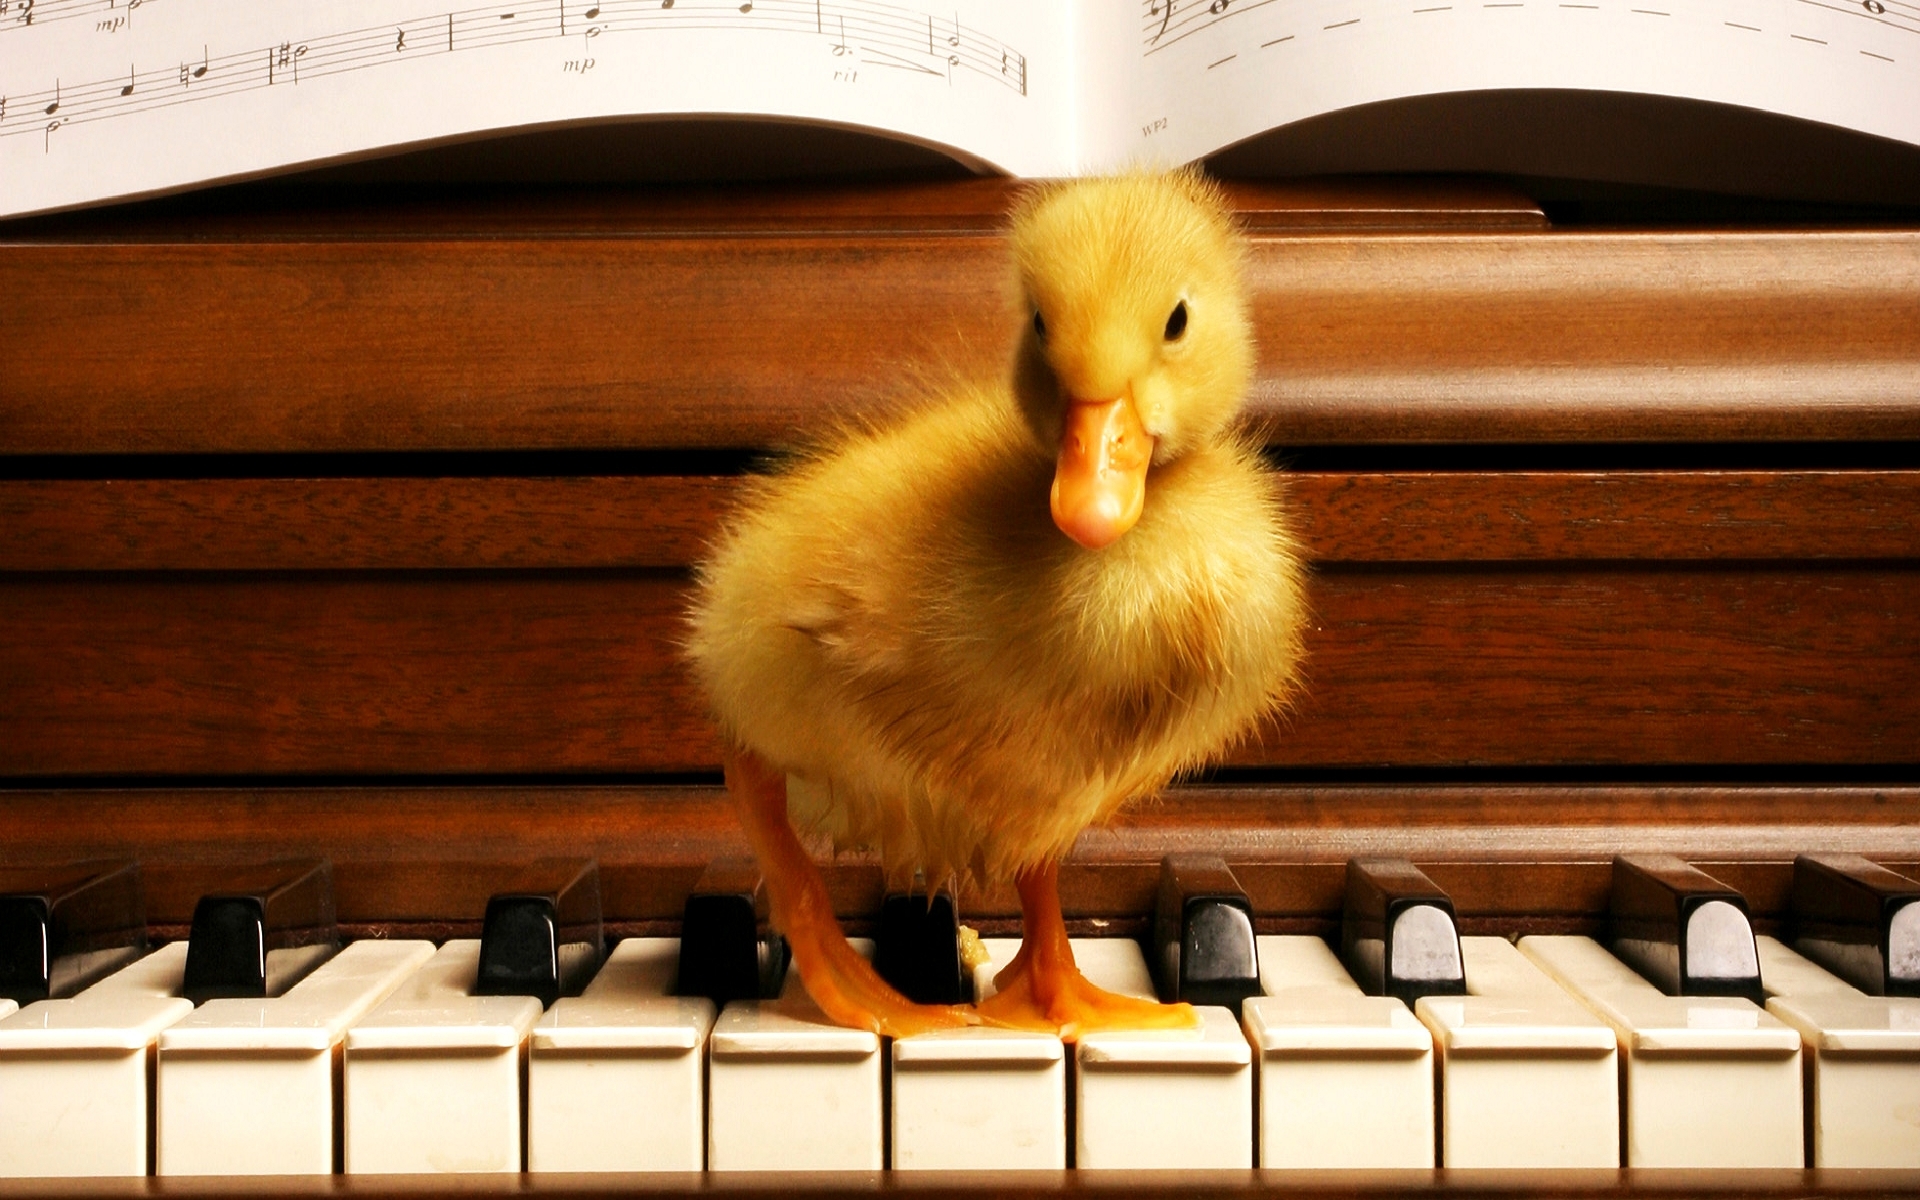 ducks, music, animals, piano, orange